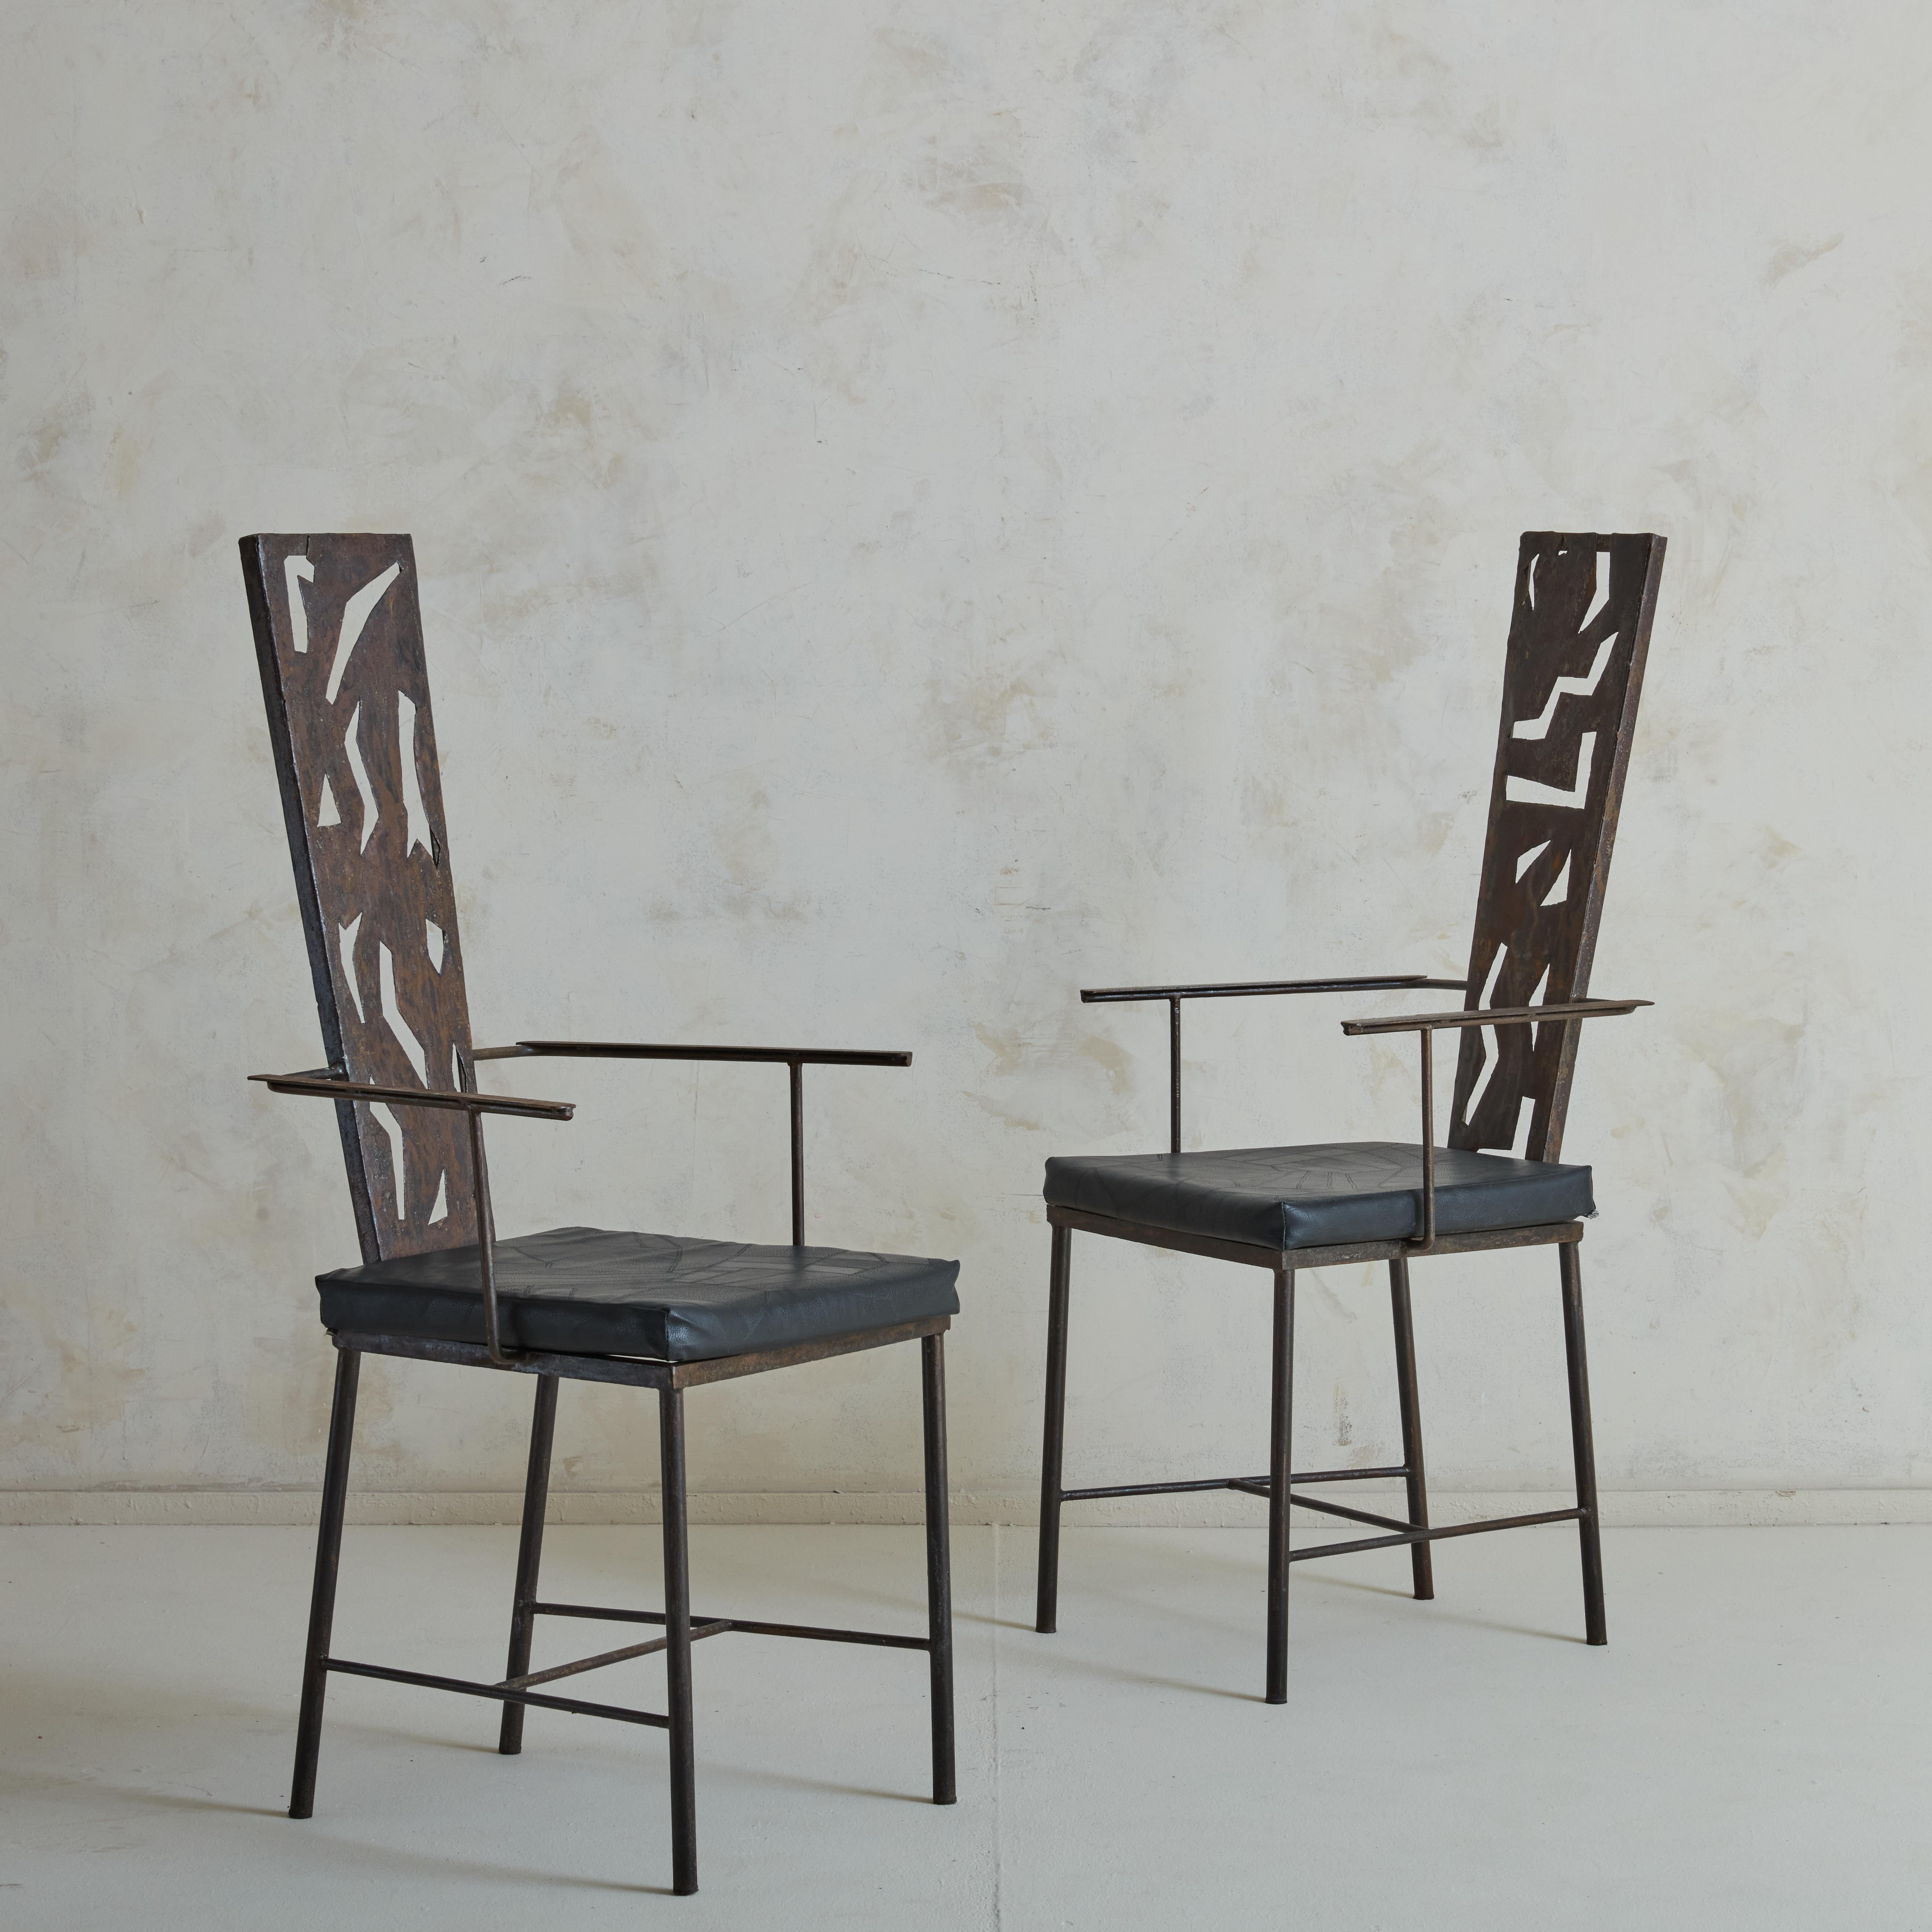 Wunderschönes Set aus 6 einzigartigen brutalistischen Stühlen aus geschweißtem Eisen mit abstrakten geometrischen Formen im negativen Raum auf der Rückenlehne und abnehmbaren schwarzen Lederkissen.

Der Brutalismus ist eine architektonische